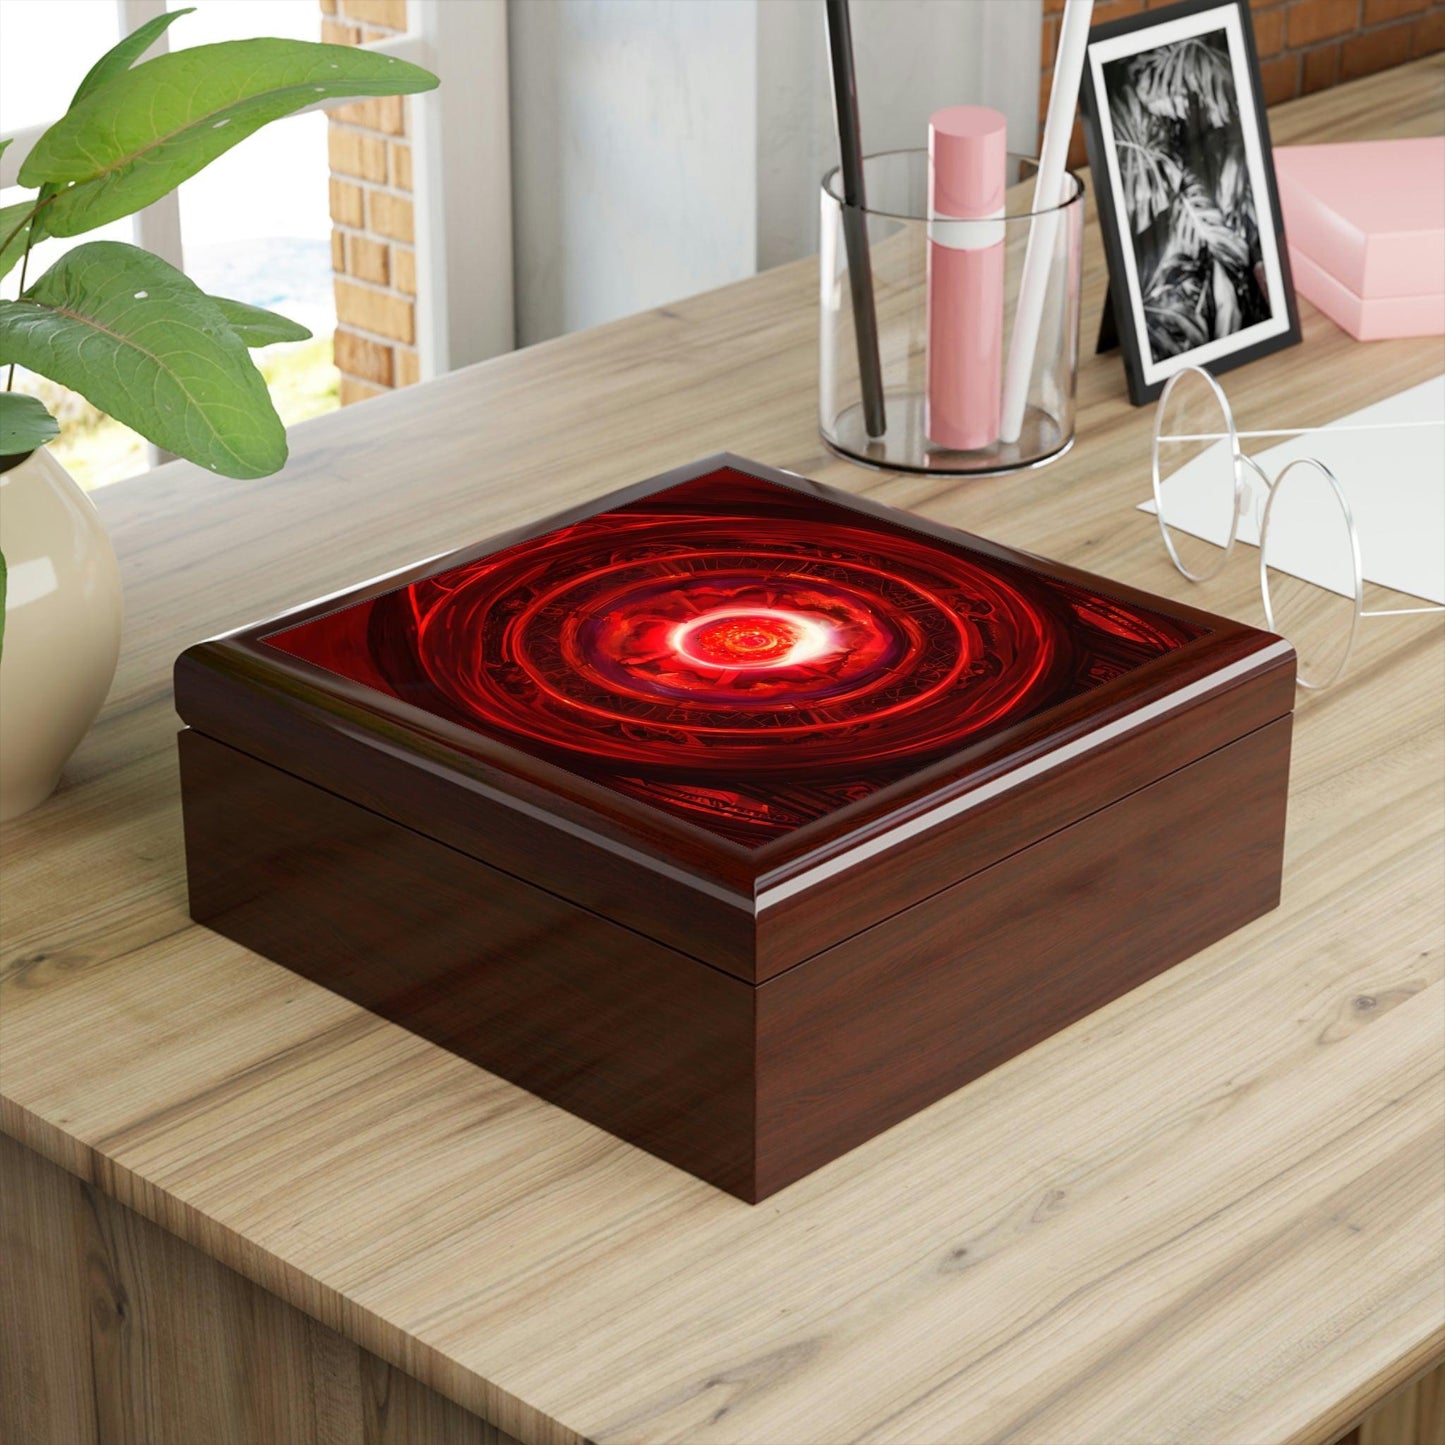 Red-Energy-Portal-Jewelry-Box-untuk-menyimpan-azimat-dan-cincin-8